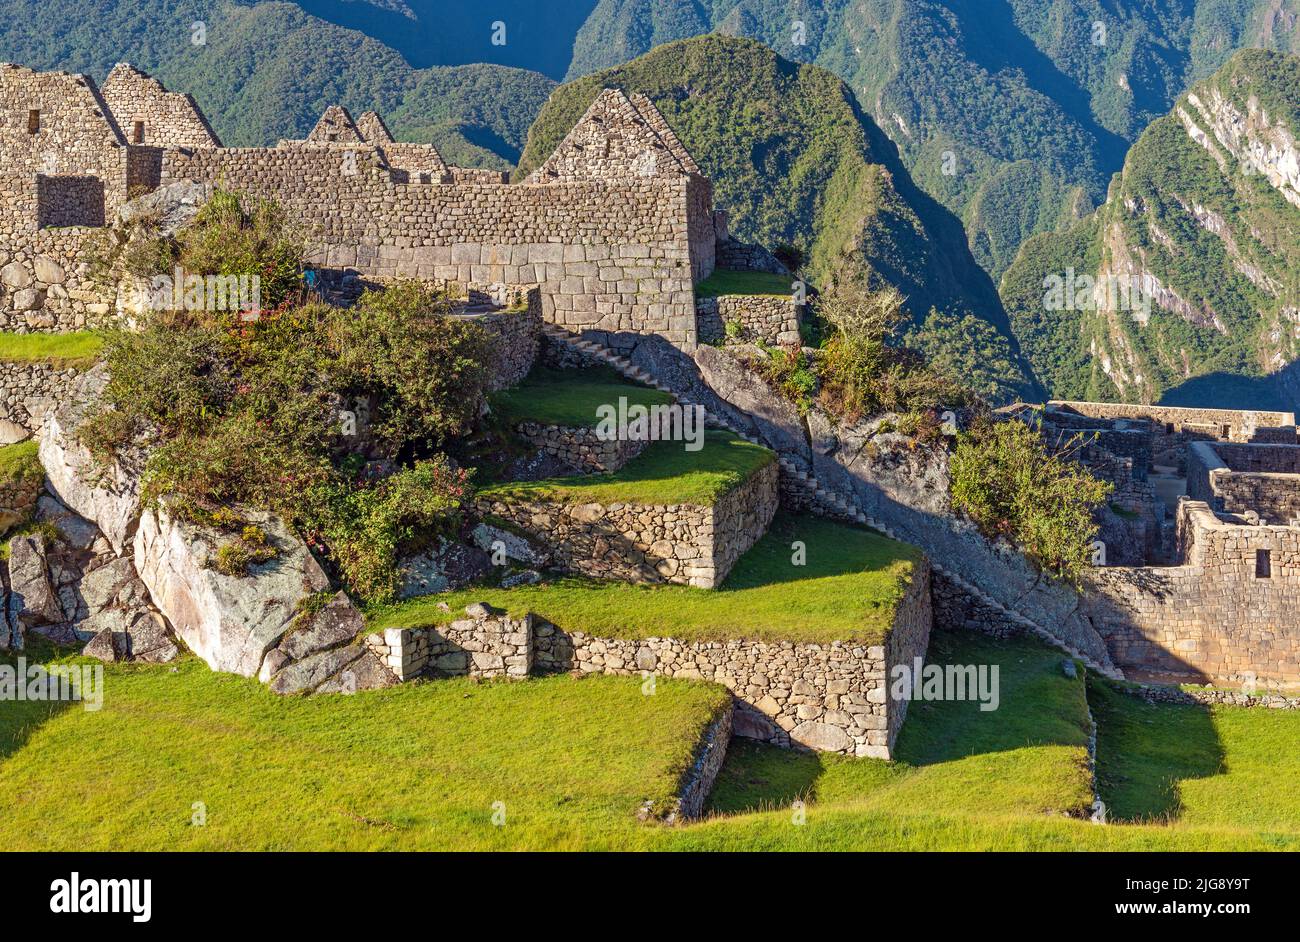 Machu Picchu Architektur mit Treppen, Mauern, Häusern und landwirtschaftlichen Terrassen, Machu Picchu historisches Heiligtum, Cusco, Peru. Stockfoto